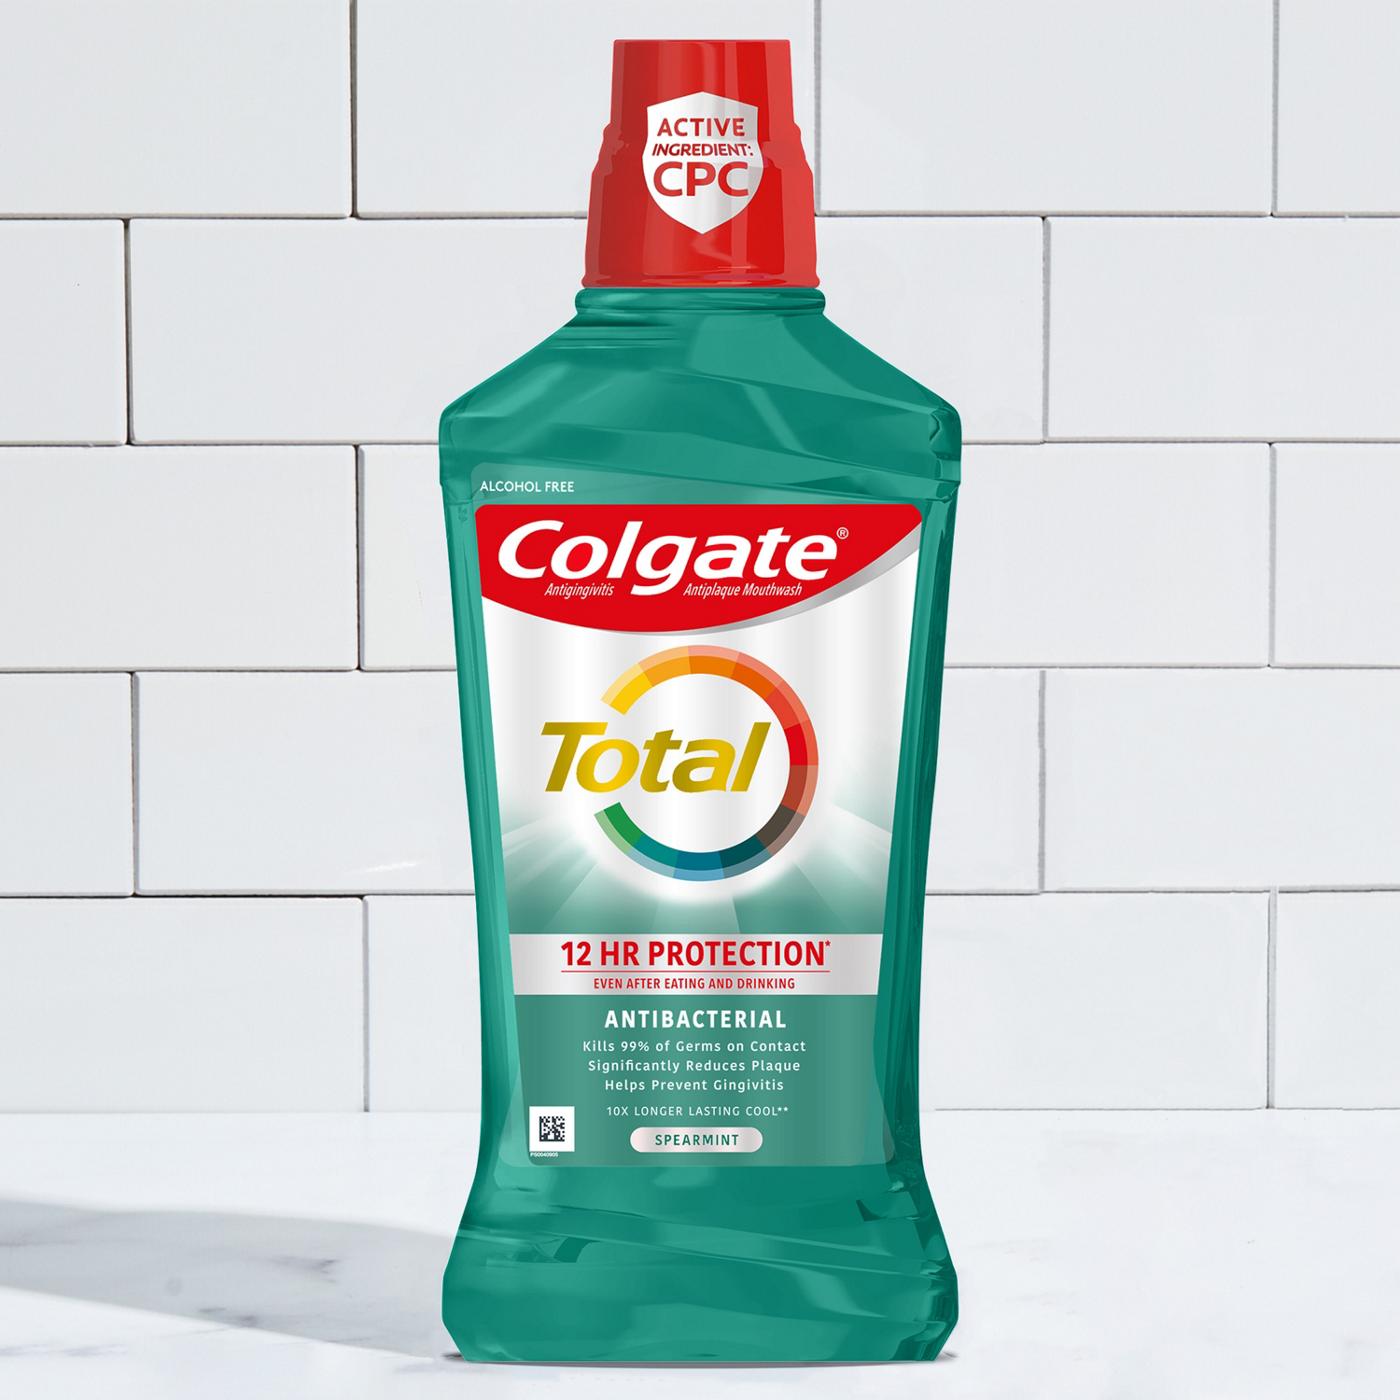 Colgate Total Advanced Pro-Shield Spearmint Surge Mouthwash; image 6 of 7